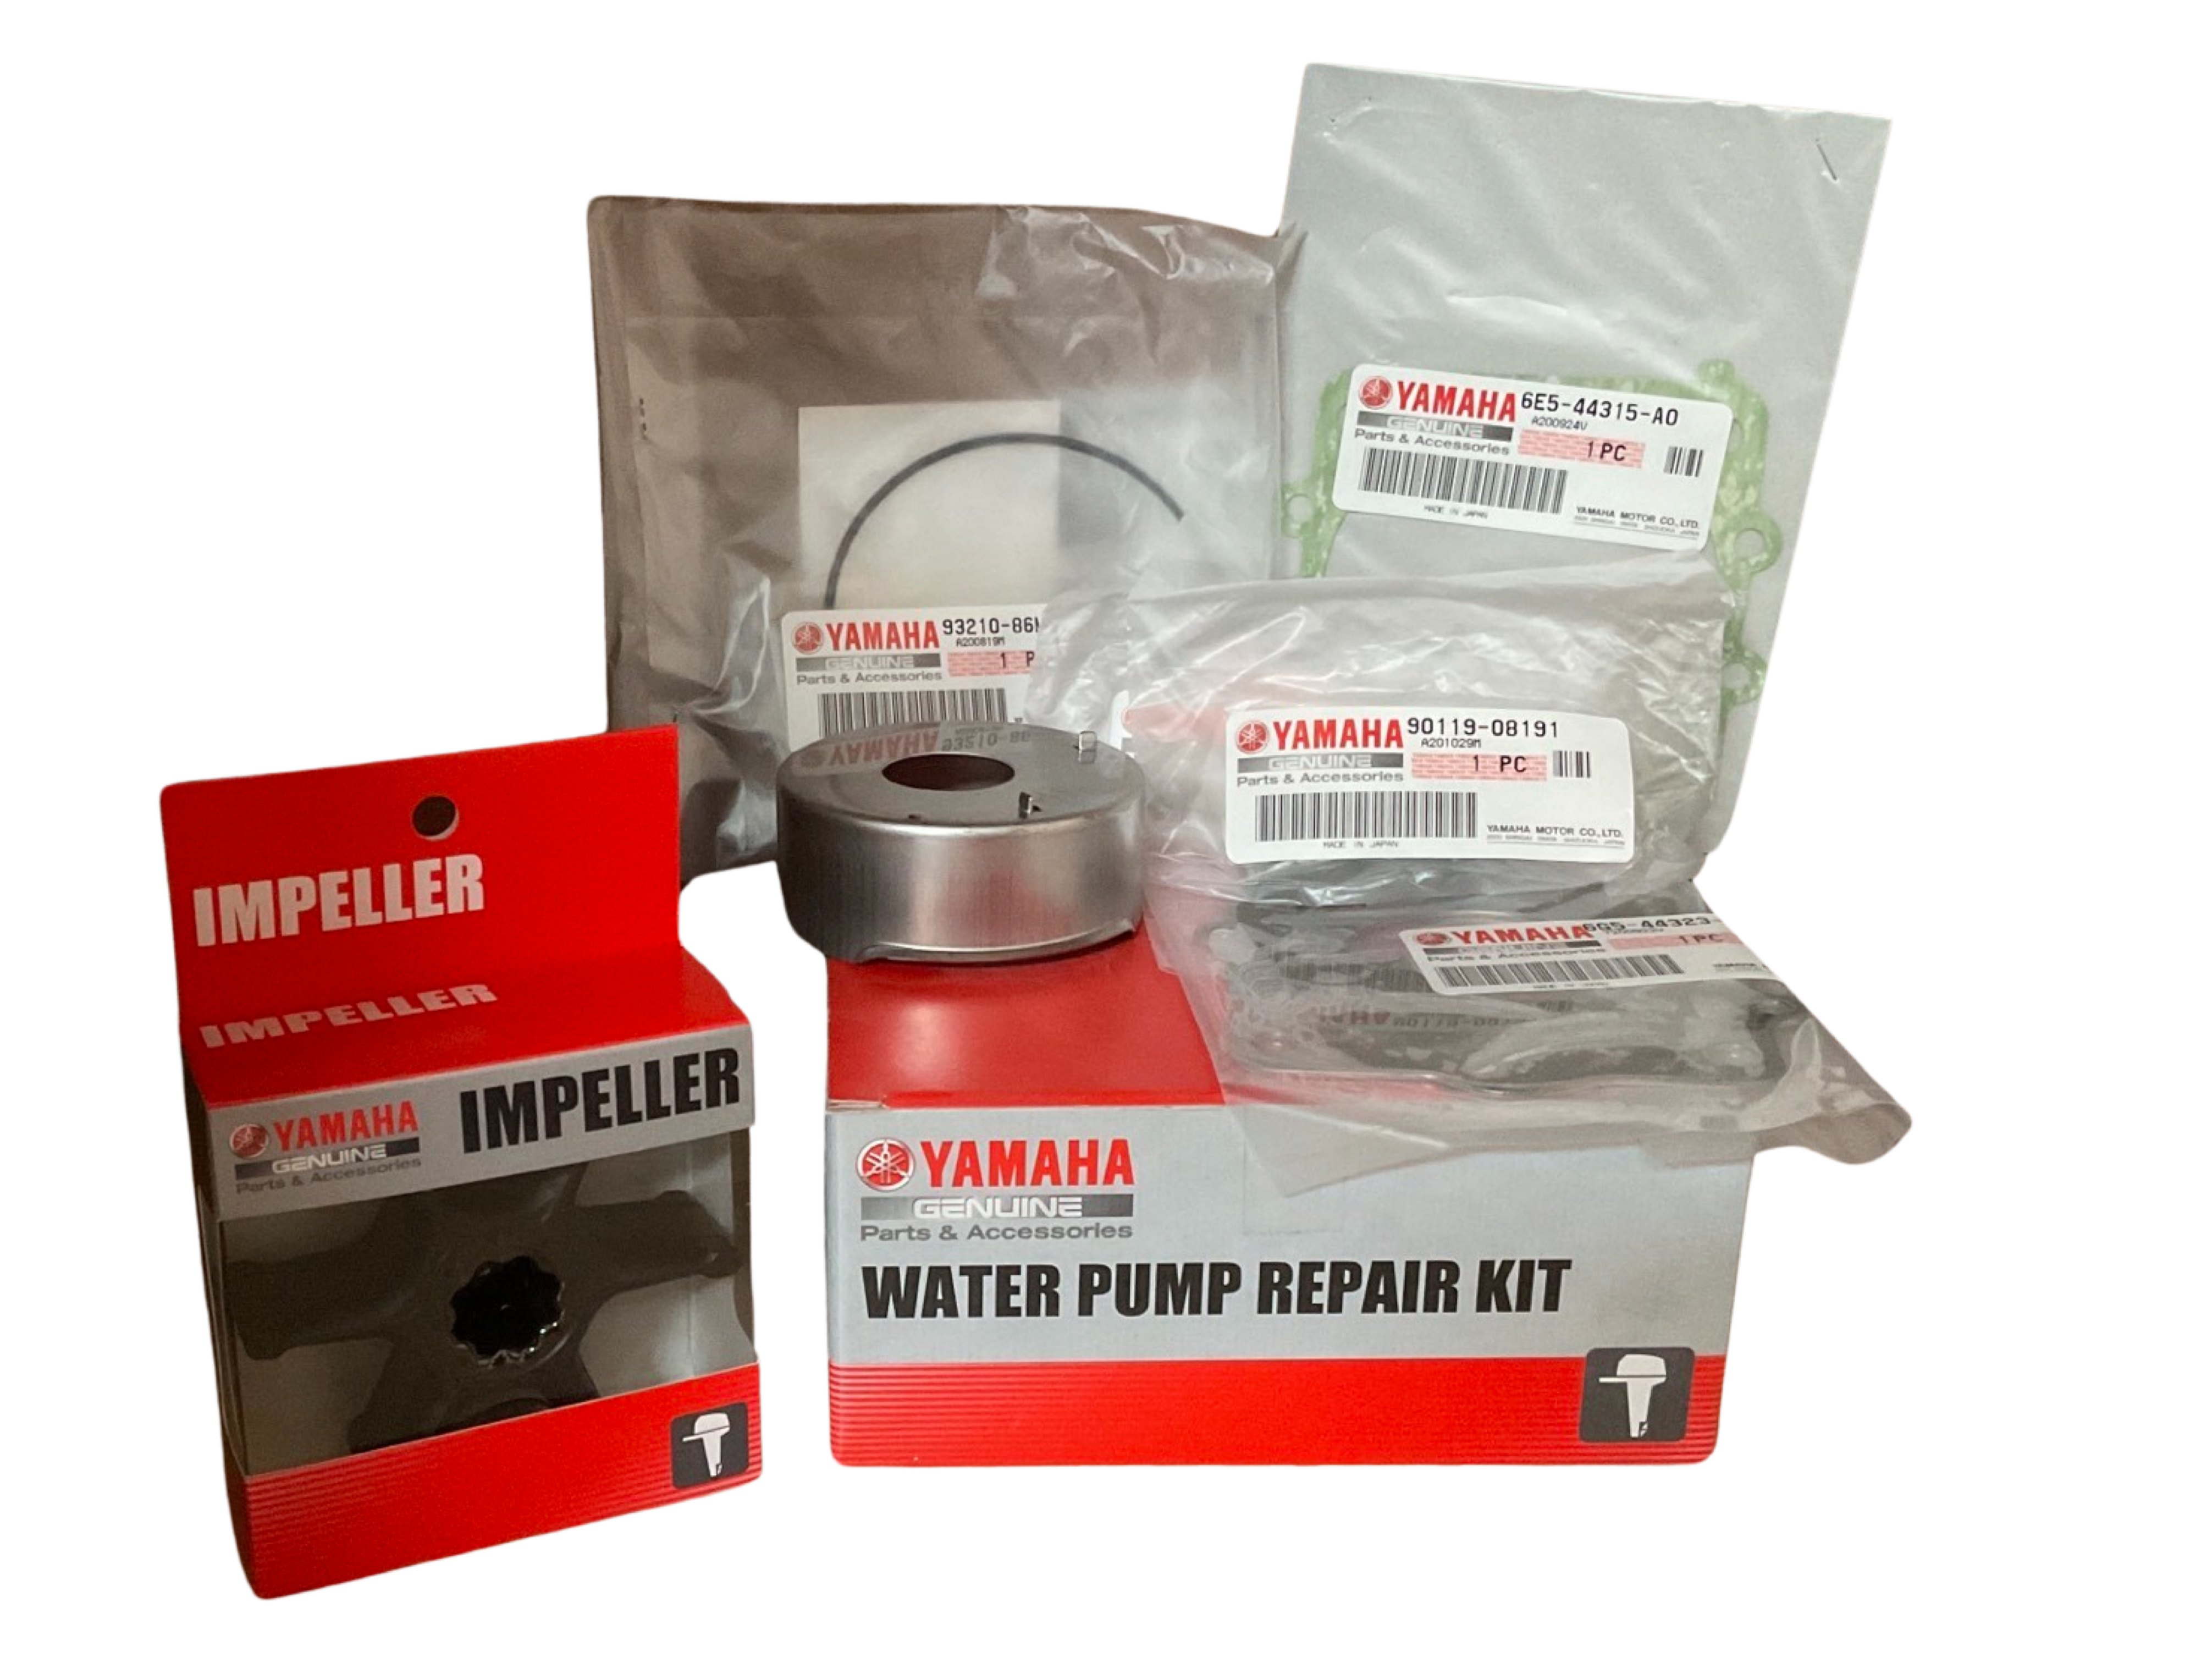 Yamaha Water Pump Repair Kit P/N: 61A-W0078-A4-00